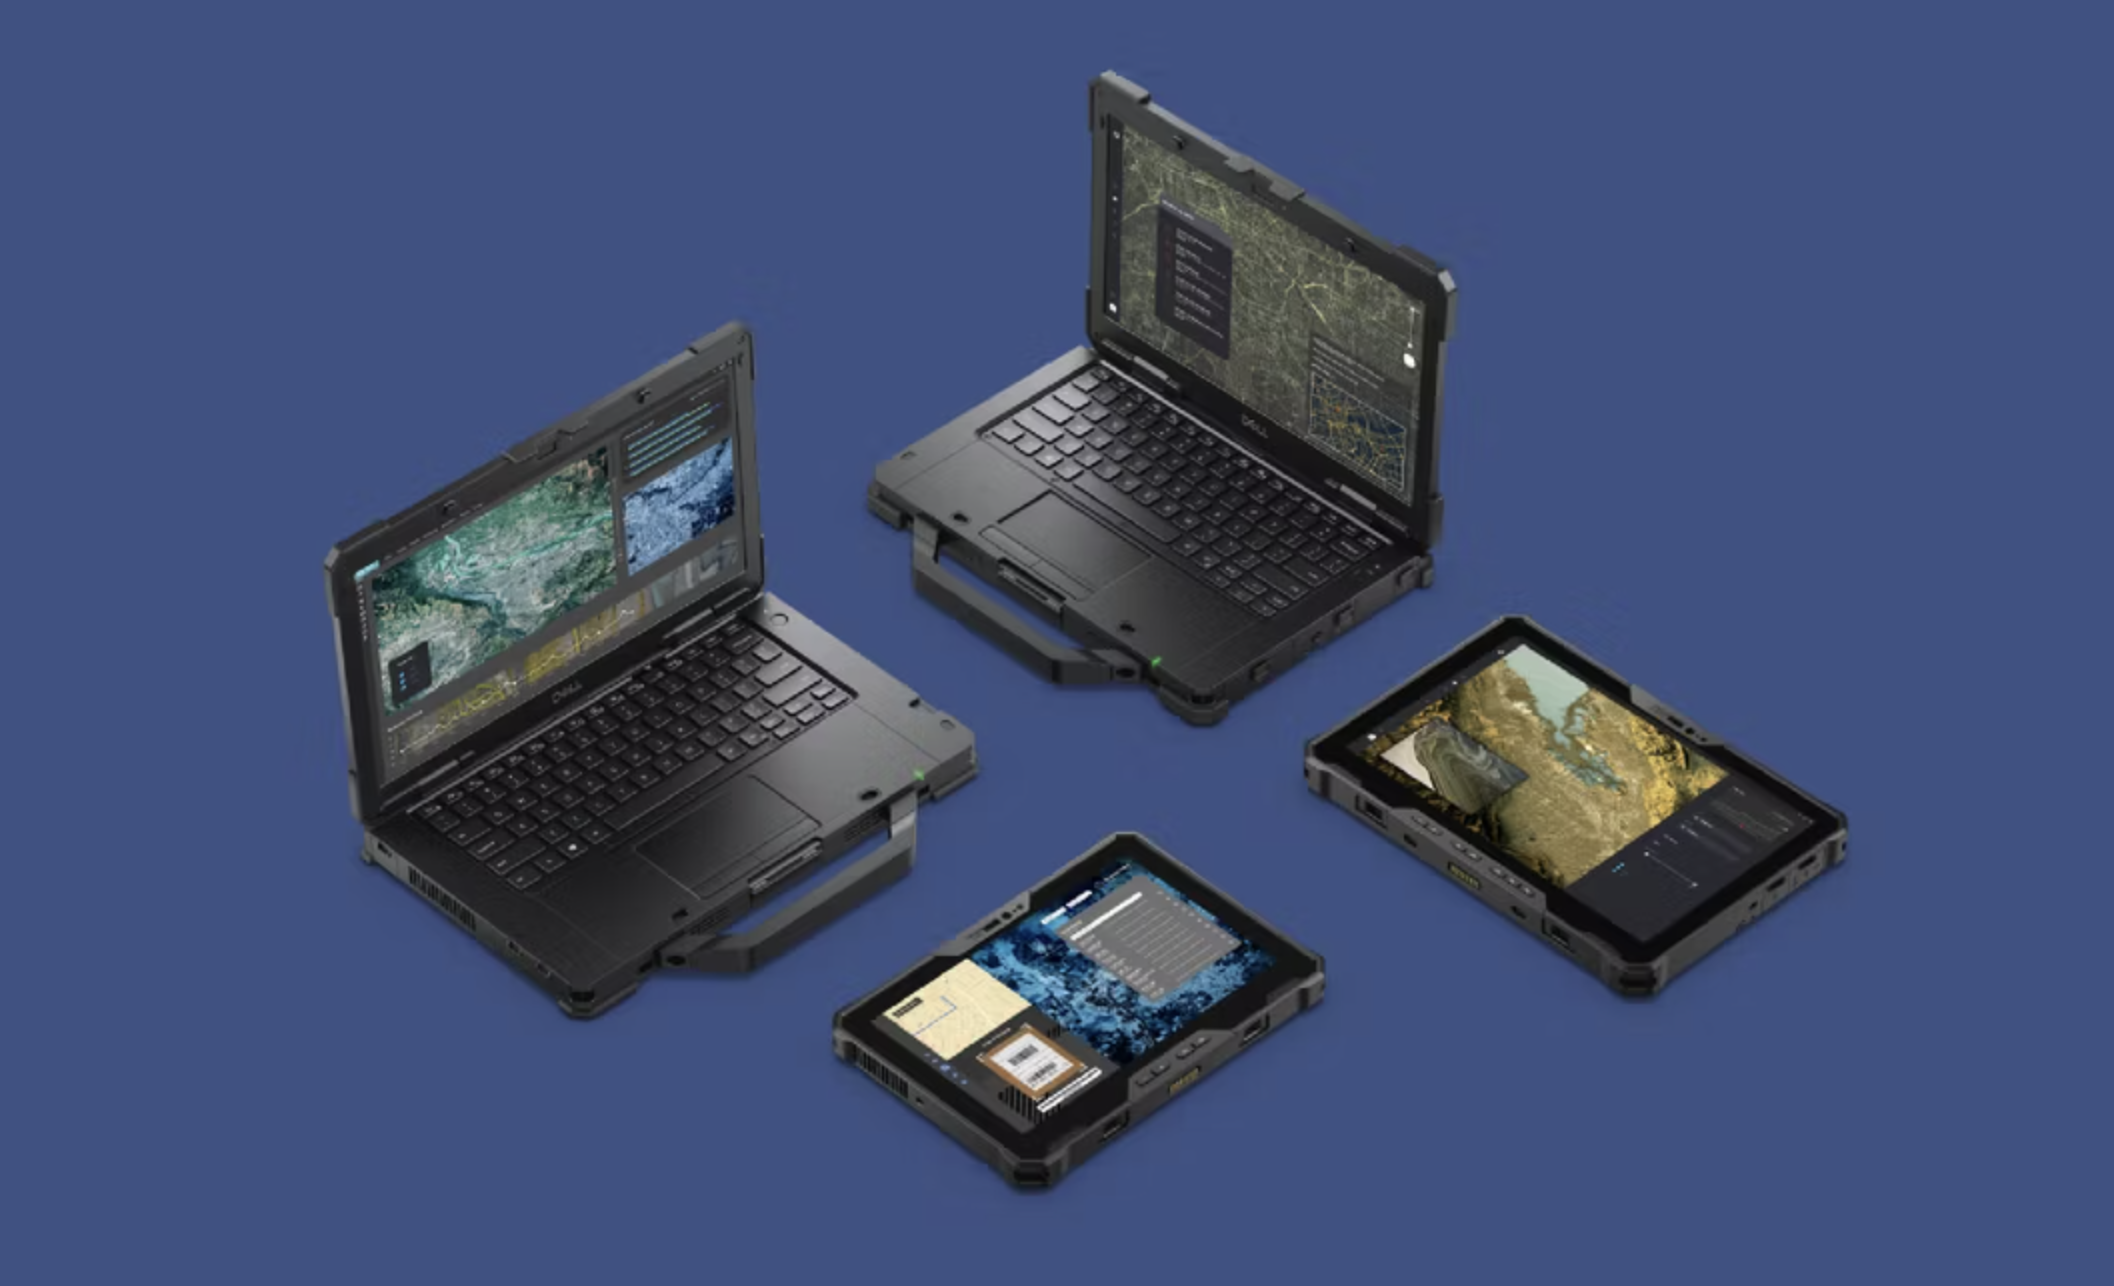 Dell представила «суперзащищённый» планшет, которому не страшны метровые падения